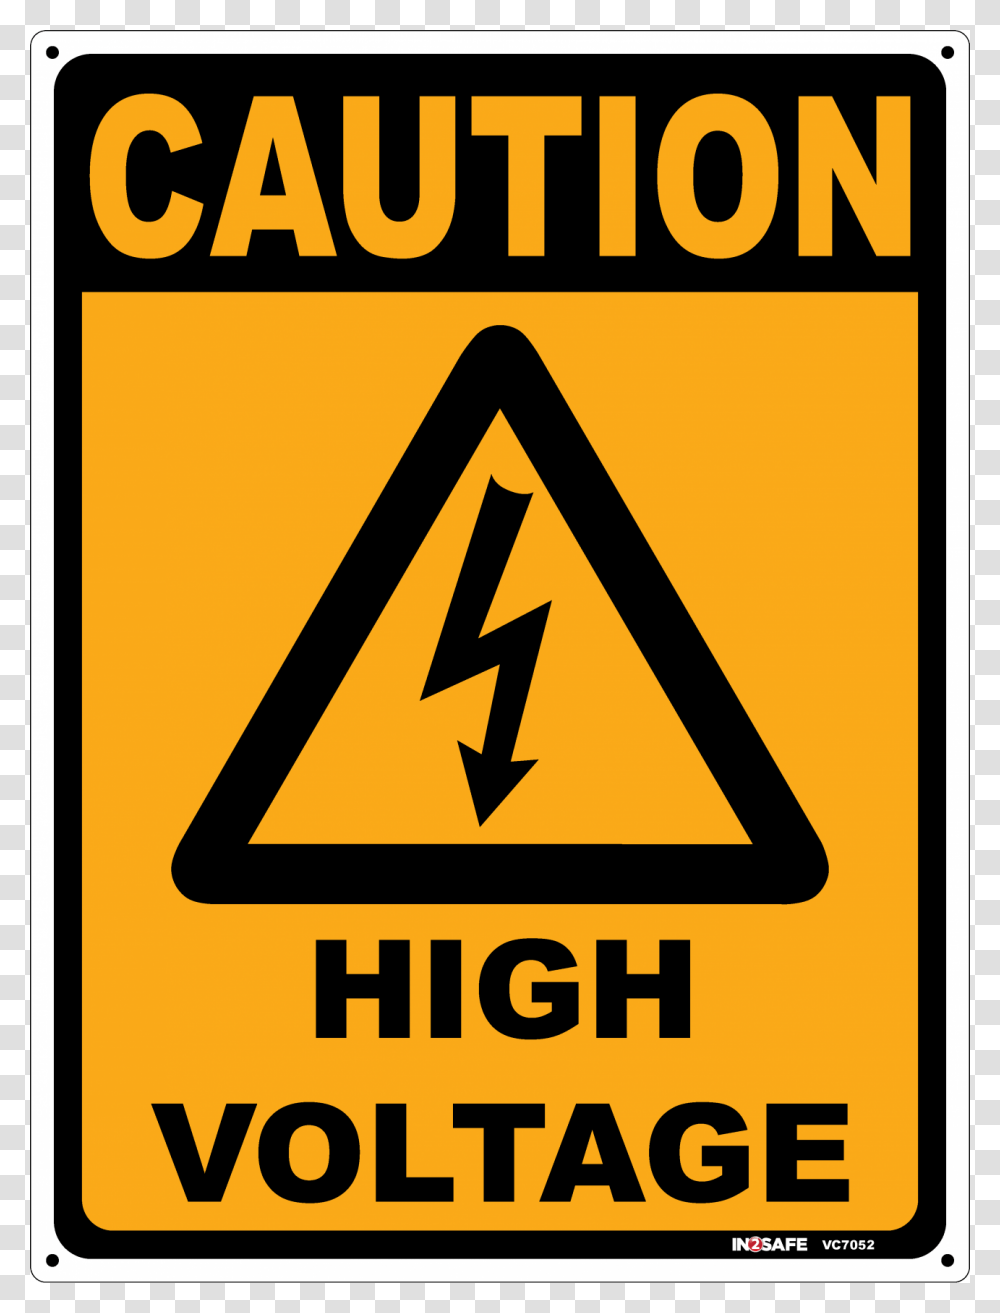 High Voltage, Road Sign Transparent Png